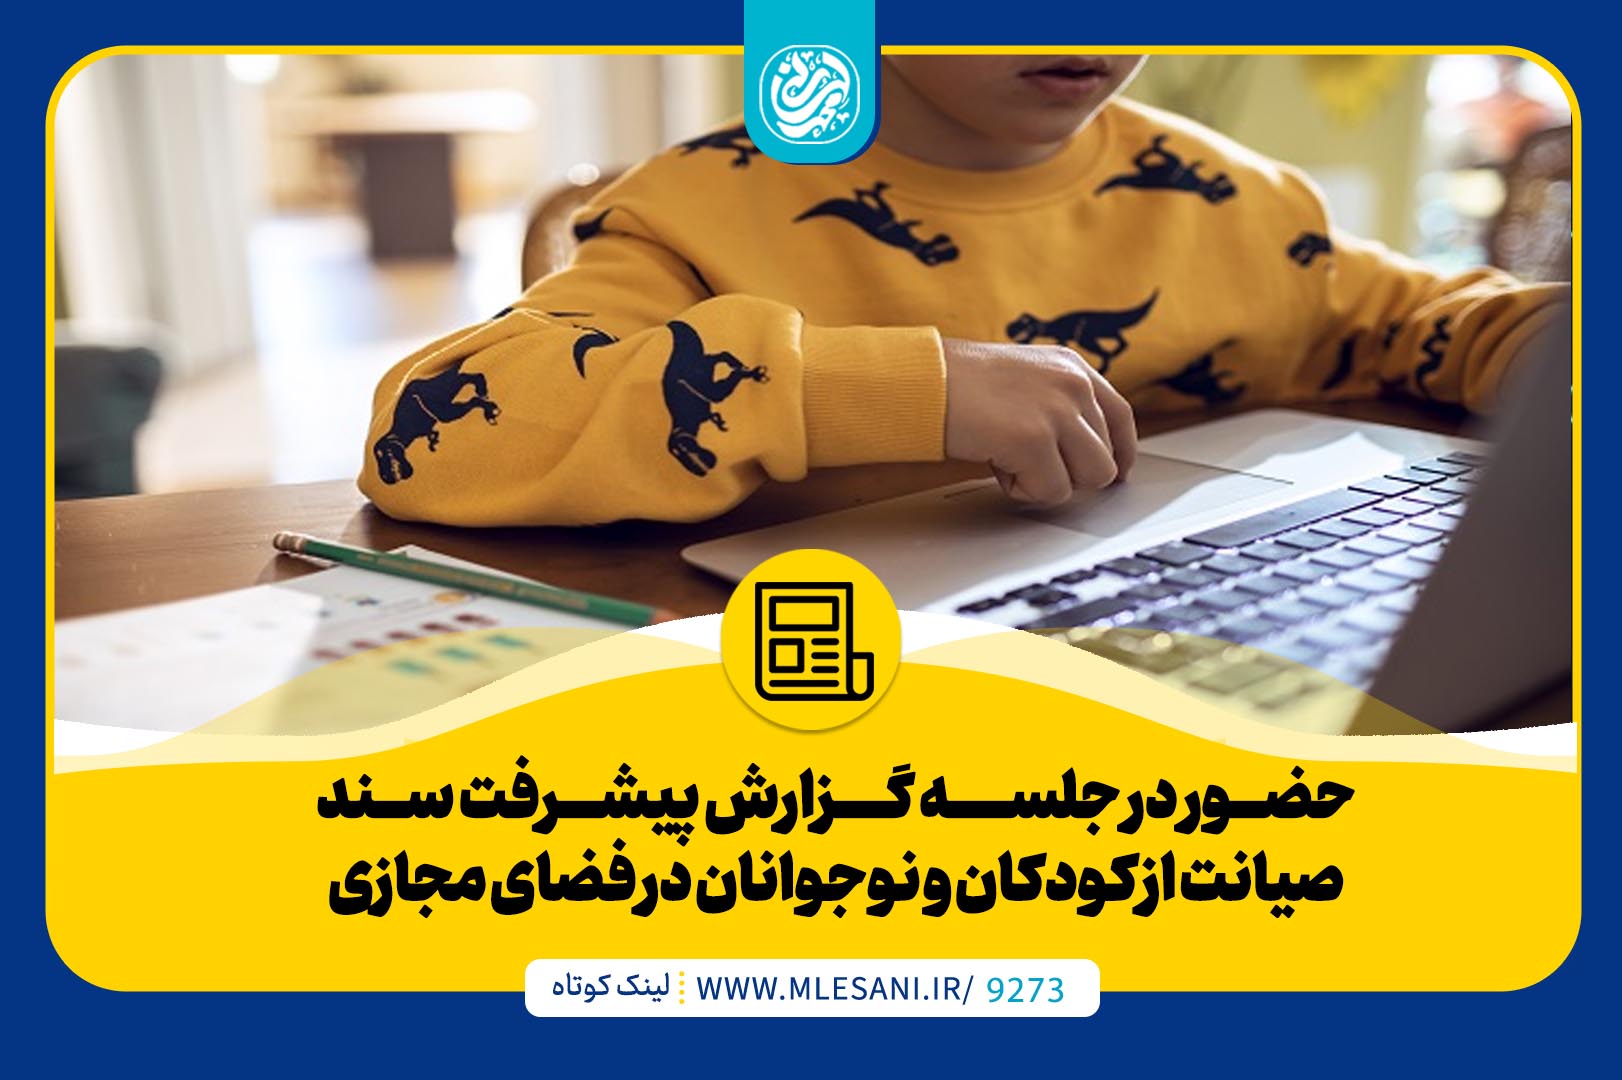 حضور محمد لسانی در جلسه گزارش پیشرفت سند صیانت از کودکان و نوجوانان در فضای مجازی